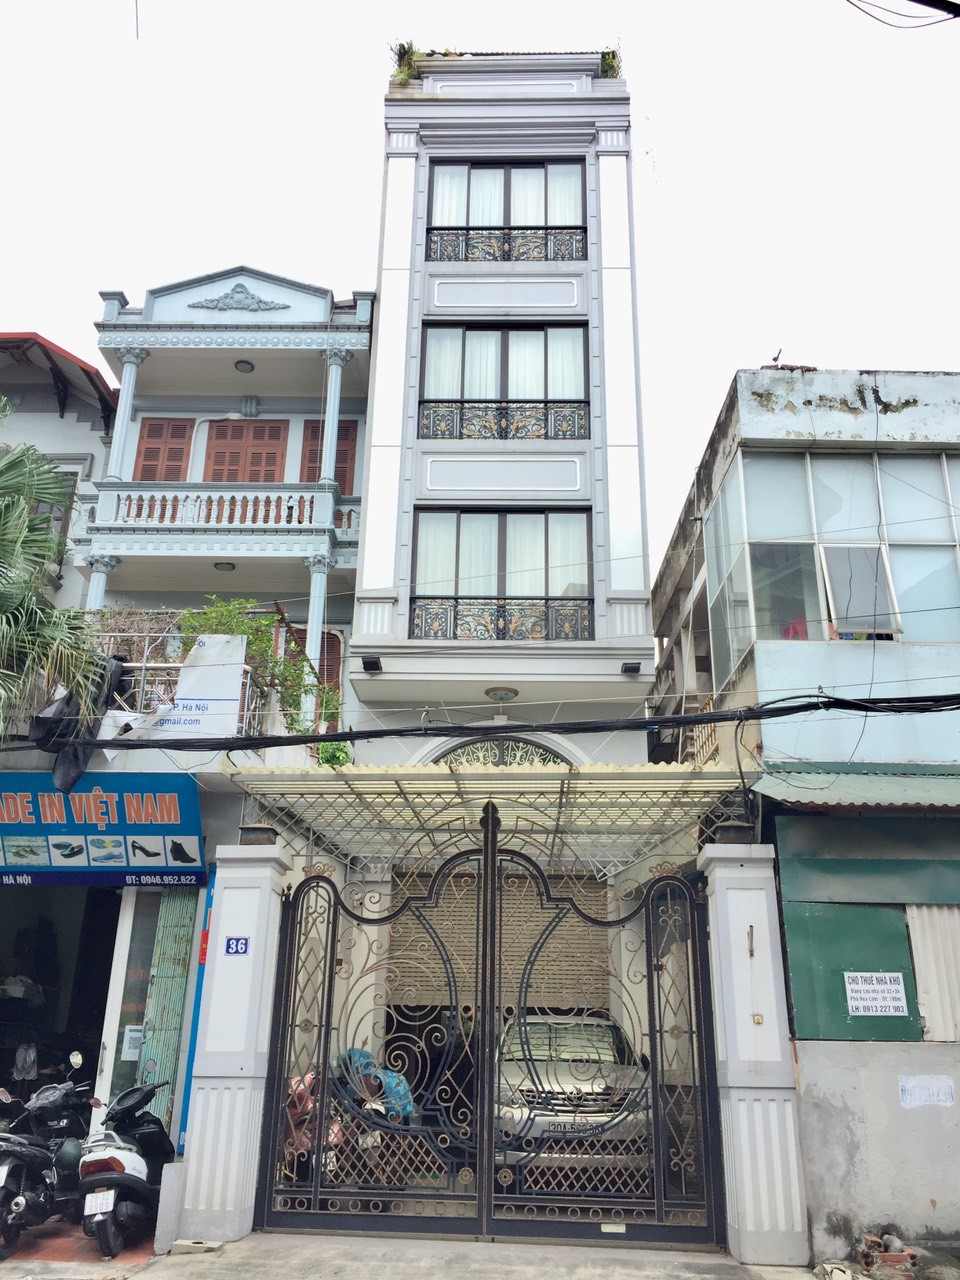 Cho thuê nhà 6 tầng, 36 mặt phố Hoa Lâm, Đức Giang, Long Biên, Hà Nội. 12491807